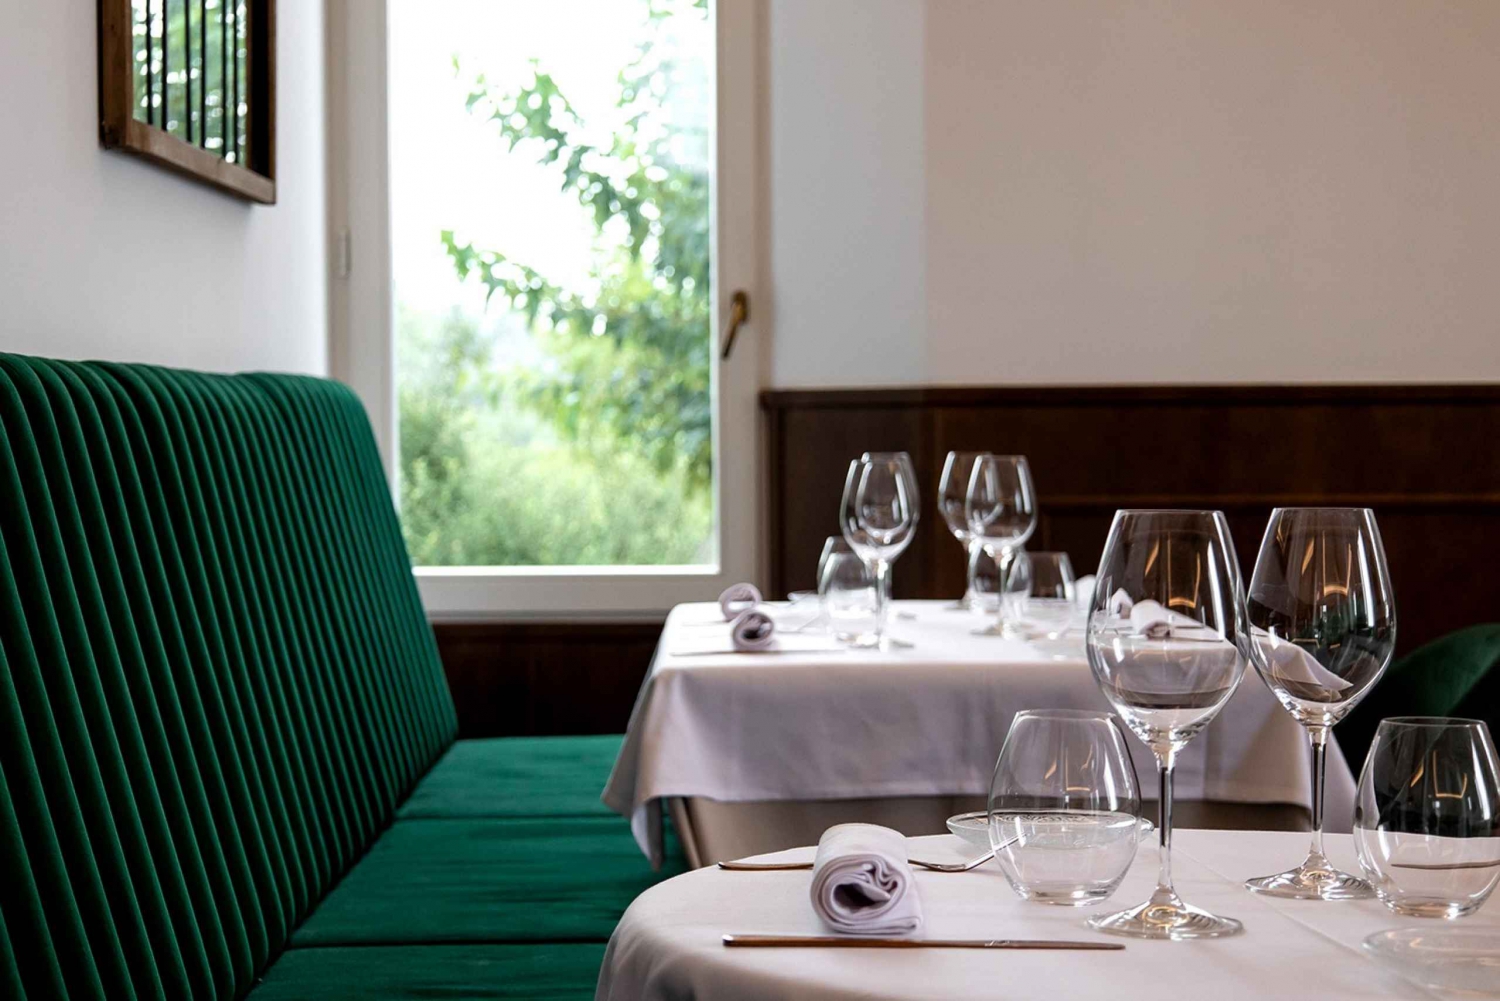 MontRubí winery tour, tasting menu with wine paring